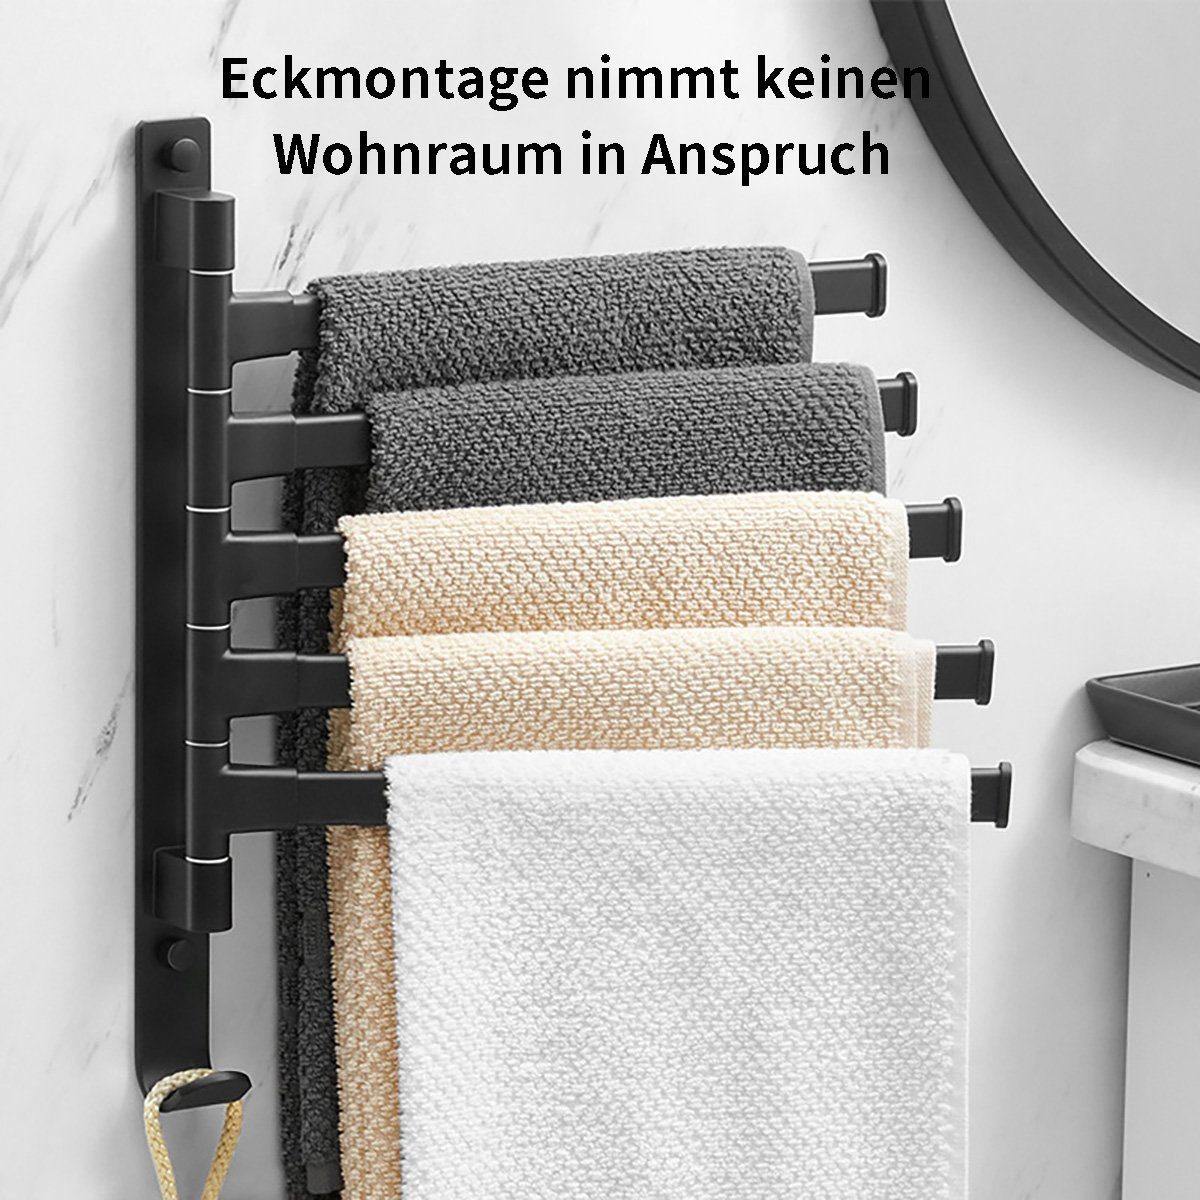 yozhiqu Handtuchhalter Drehbarer Handtuchhalter, 5 Stangen, Badezimmer-Wandhandtuchhalter ohne Bohren